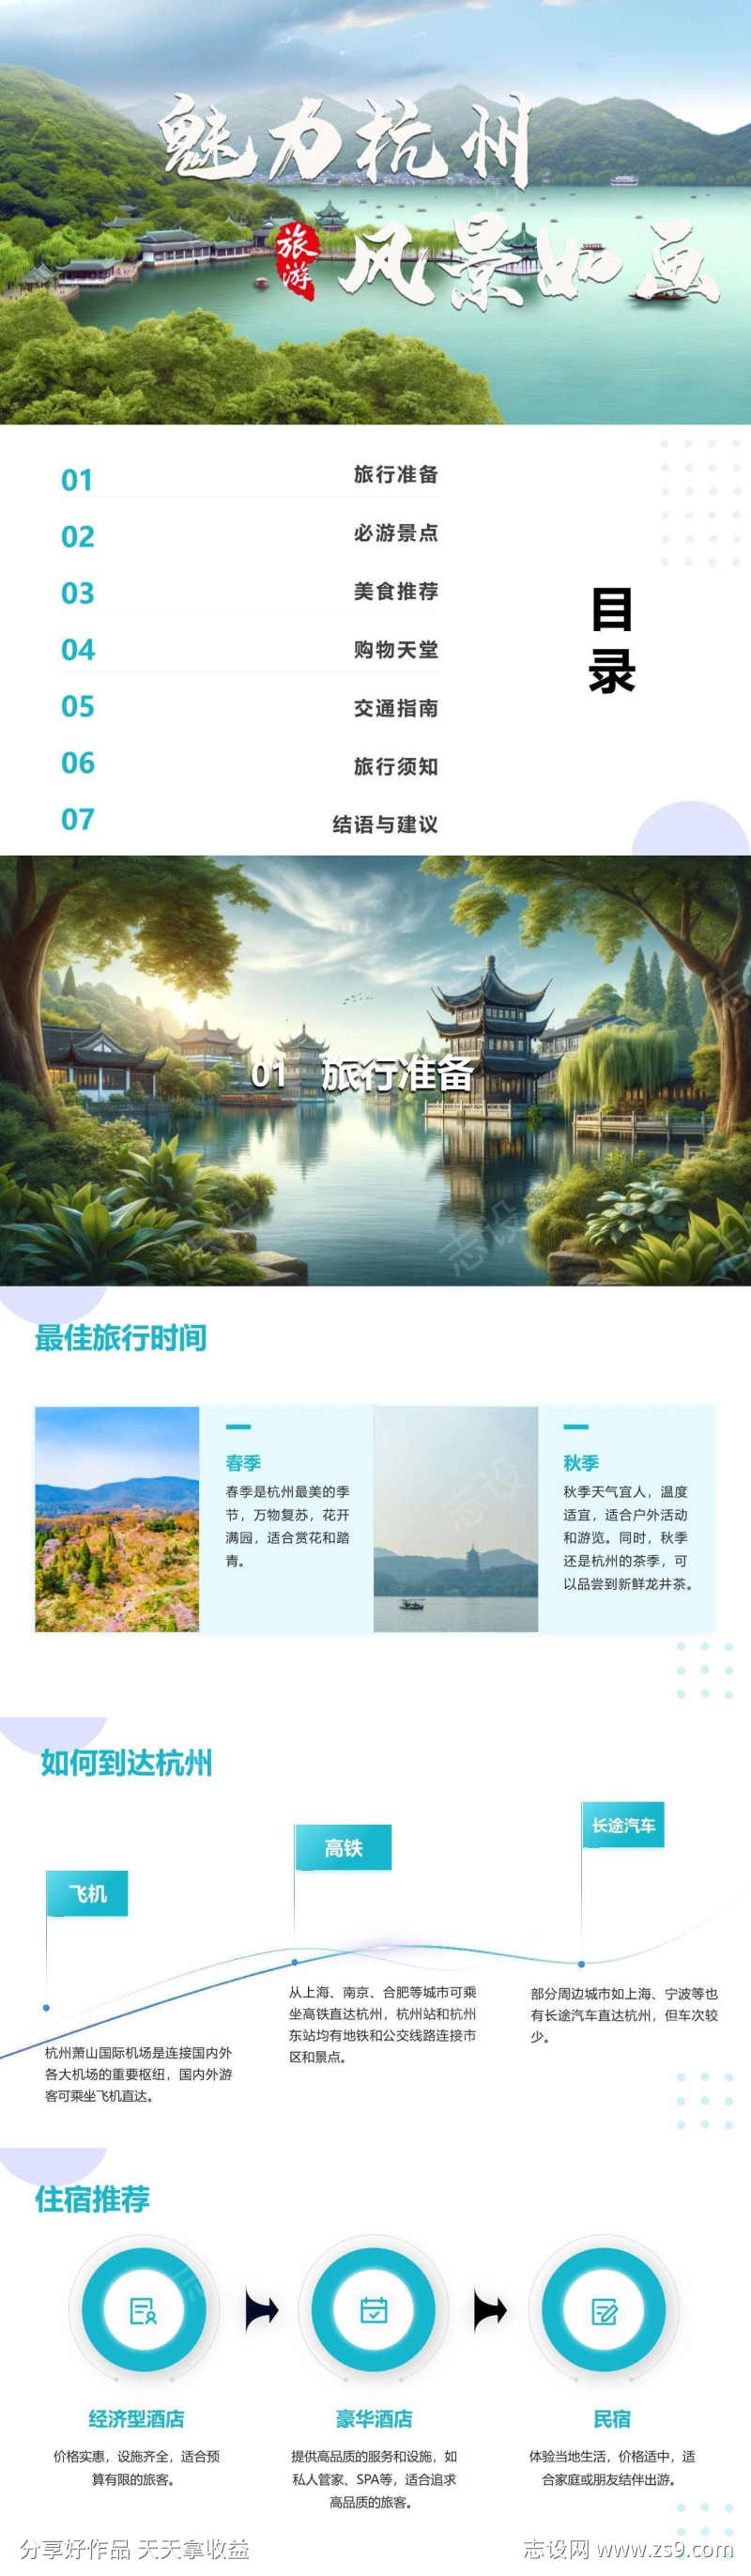 杭州自由行旅游攻略PPT